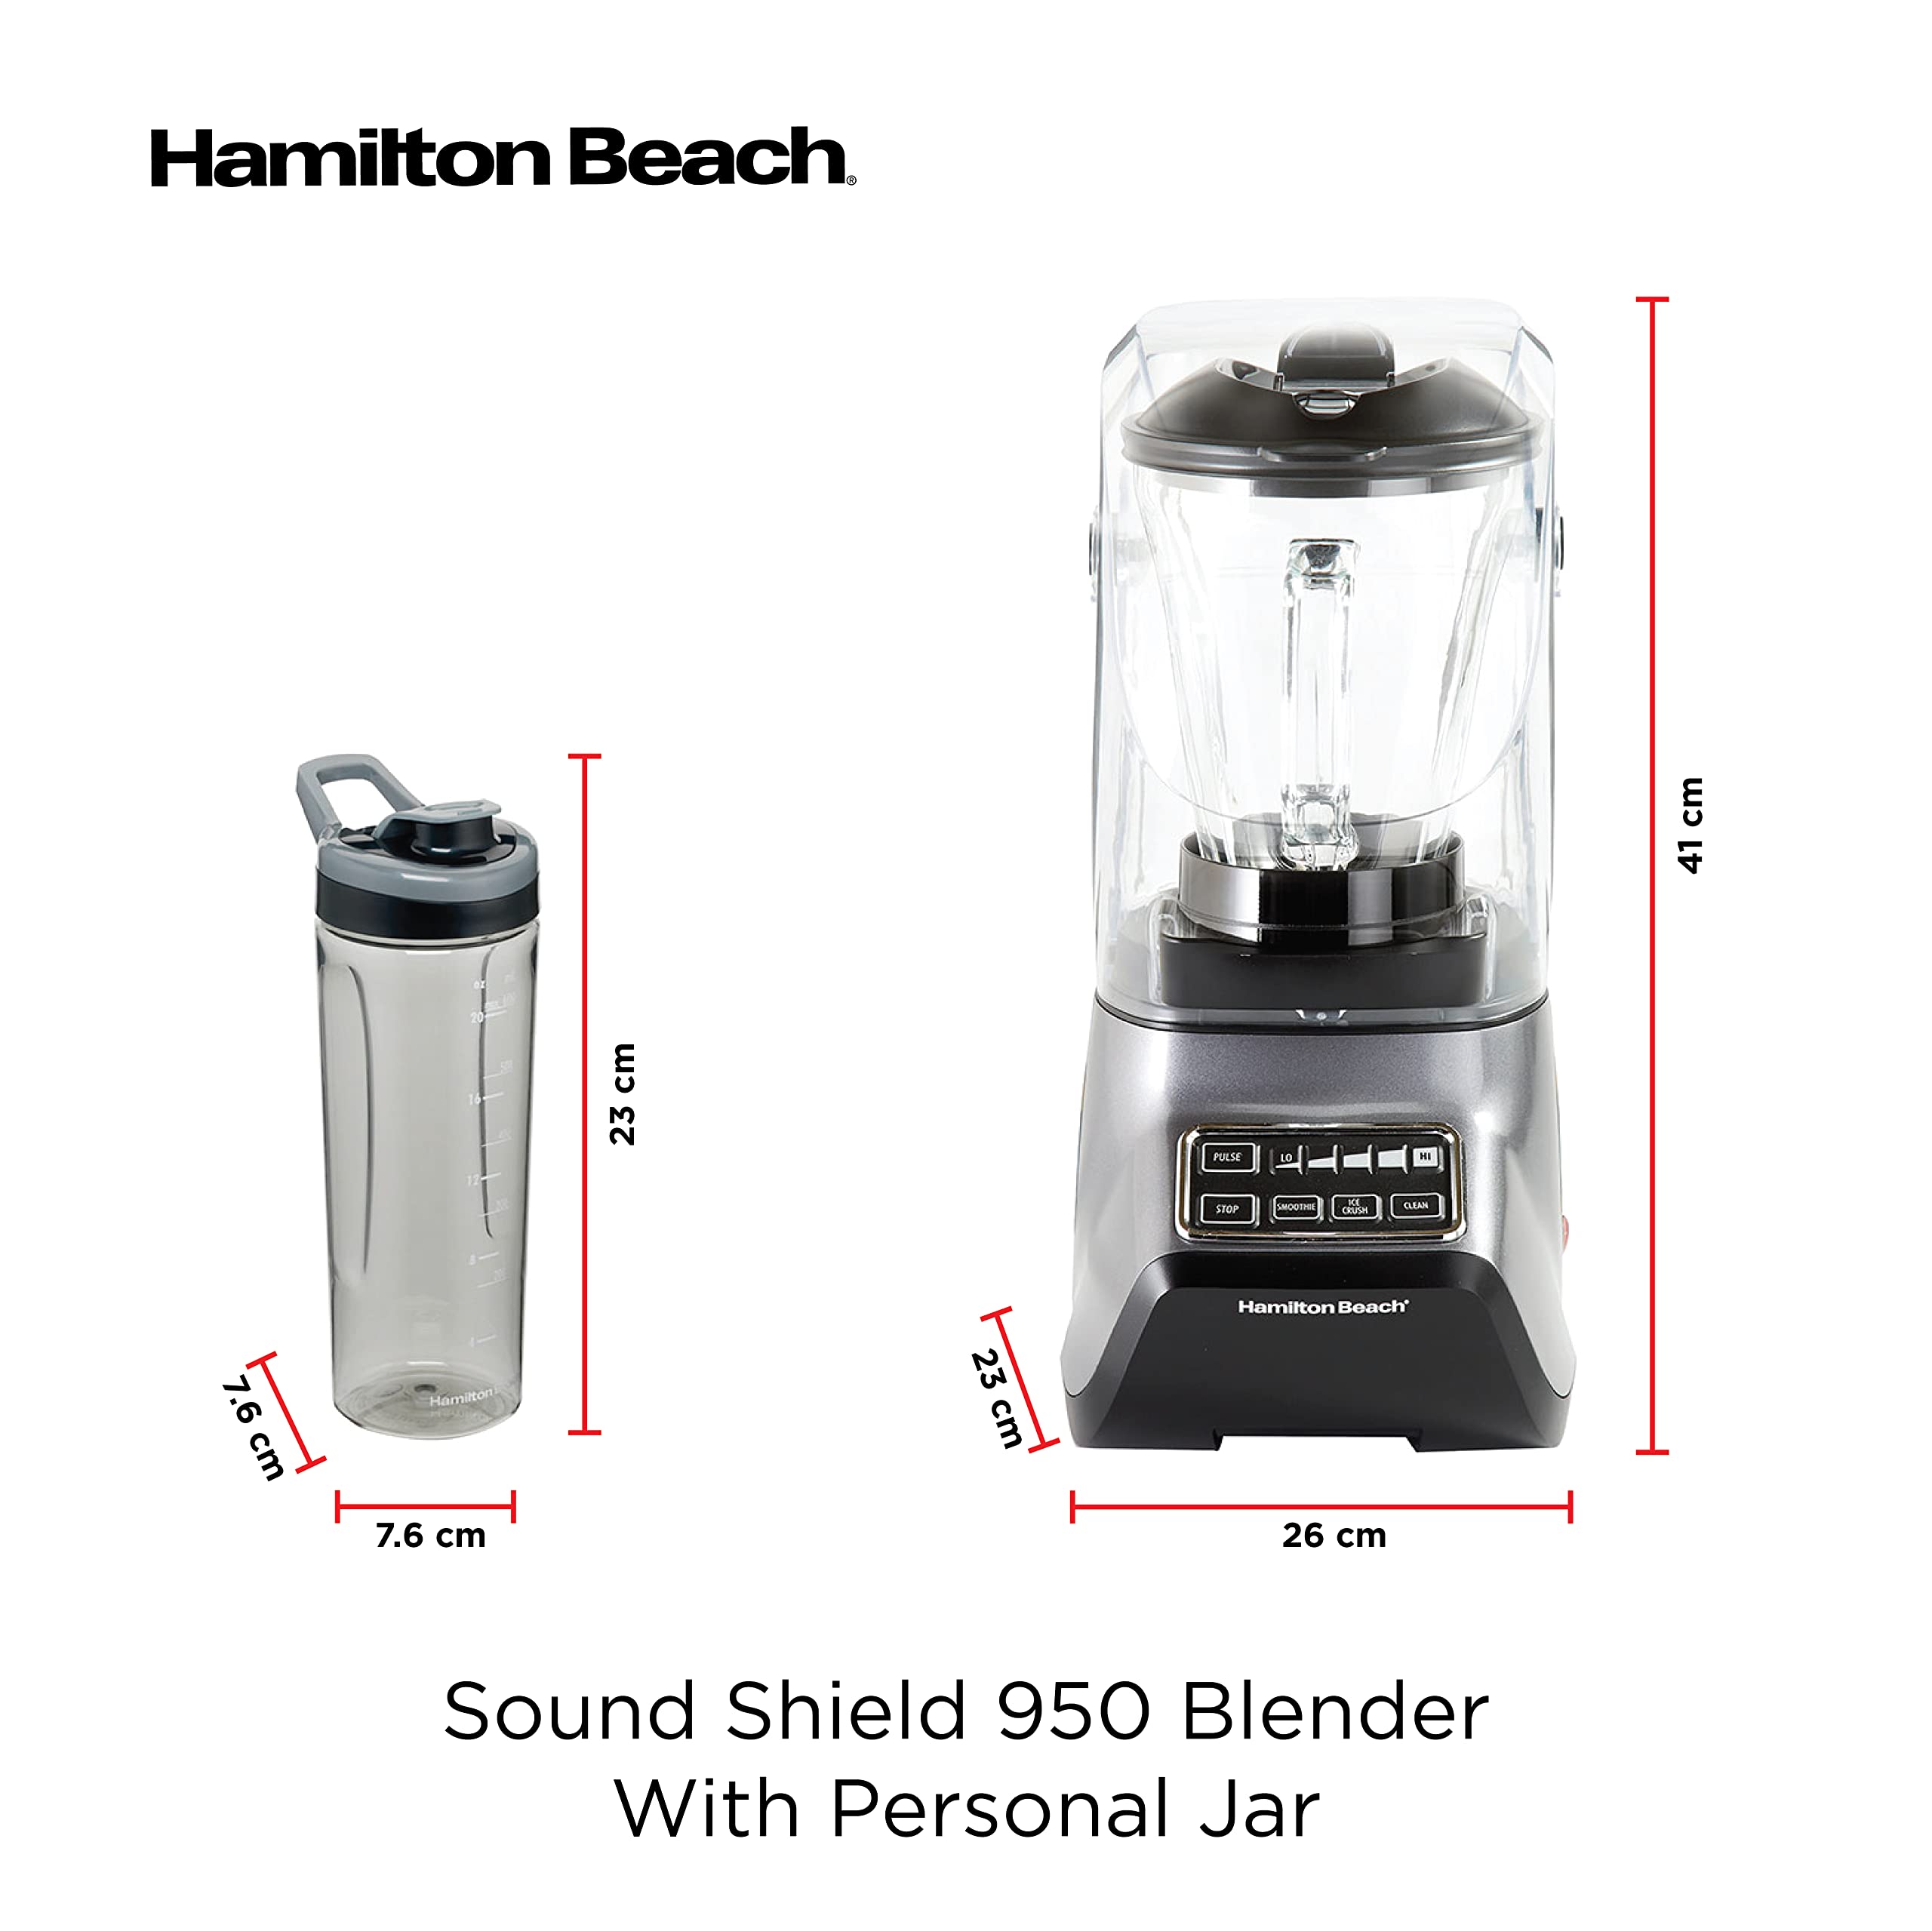 Hamilton Beach Quiet Blender, 55% Less Noise, 950 Peak Watts, 3 Presets Smoothie Ice Crush, 1.5L Glass Jar هاملتون بيتش خلاط هادئ، ضوضاء اقل بنسبة 55%، قدرة قصوى 950 واط، 3 اعدادات مسبقا لسحق الثلج والسموثي، وعاء زجاجي سعة 1.5 لتر